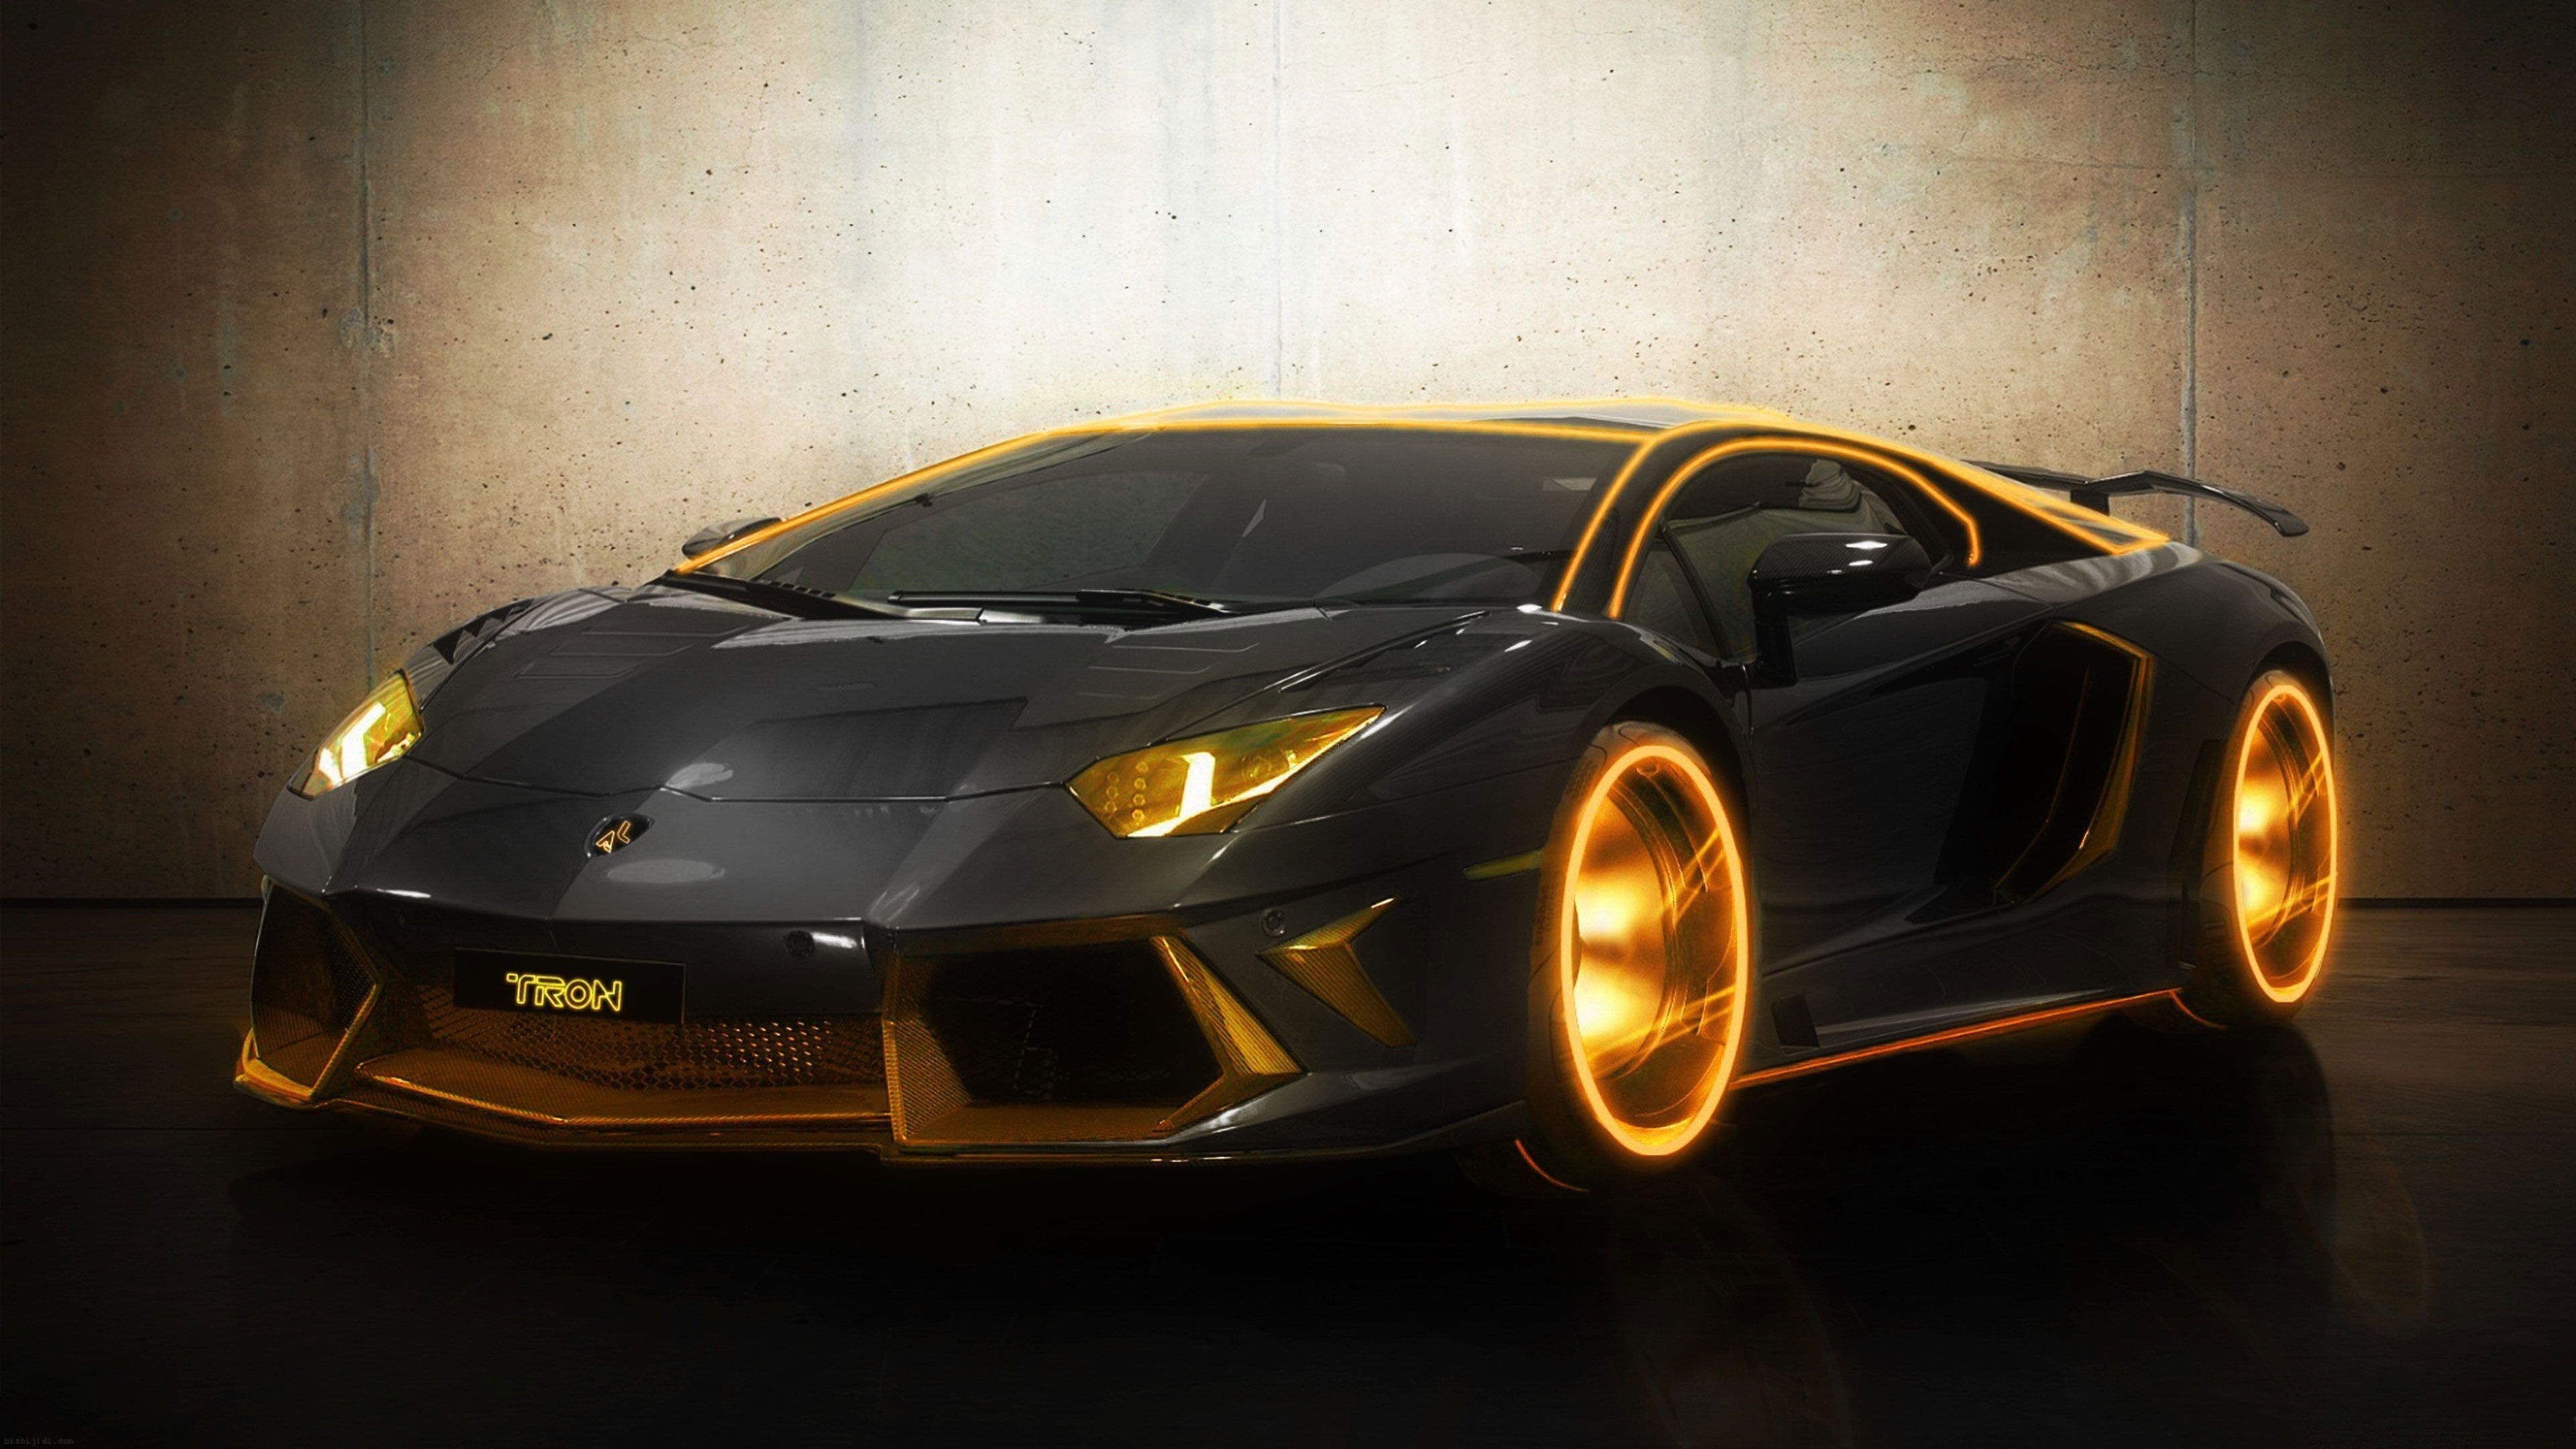 Gold Plated Lamborghini Aventador